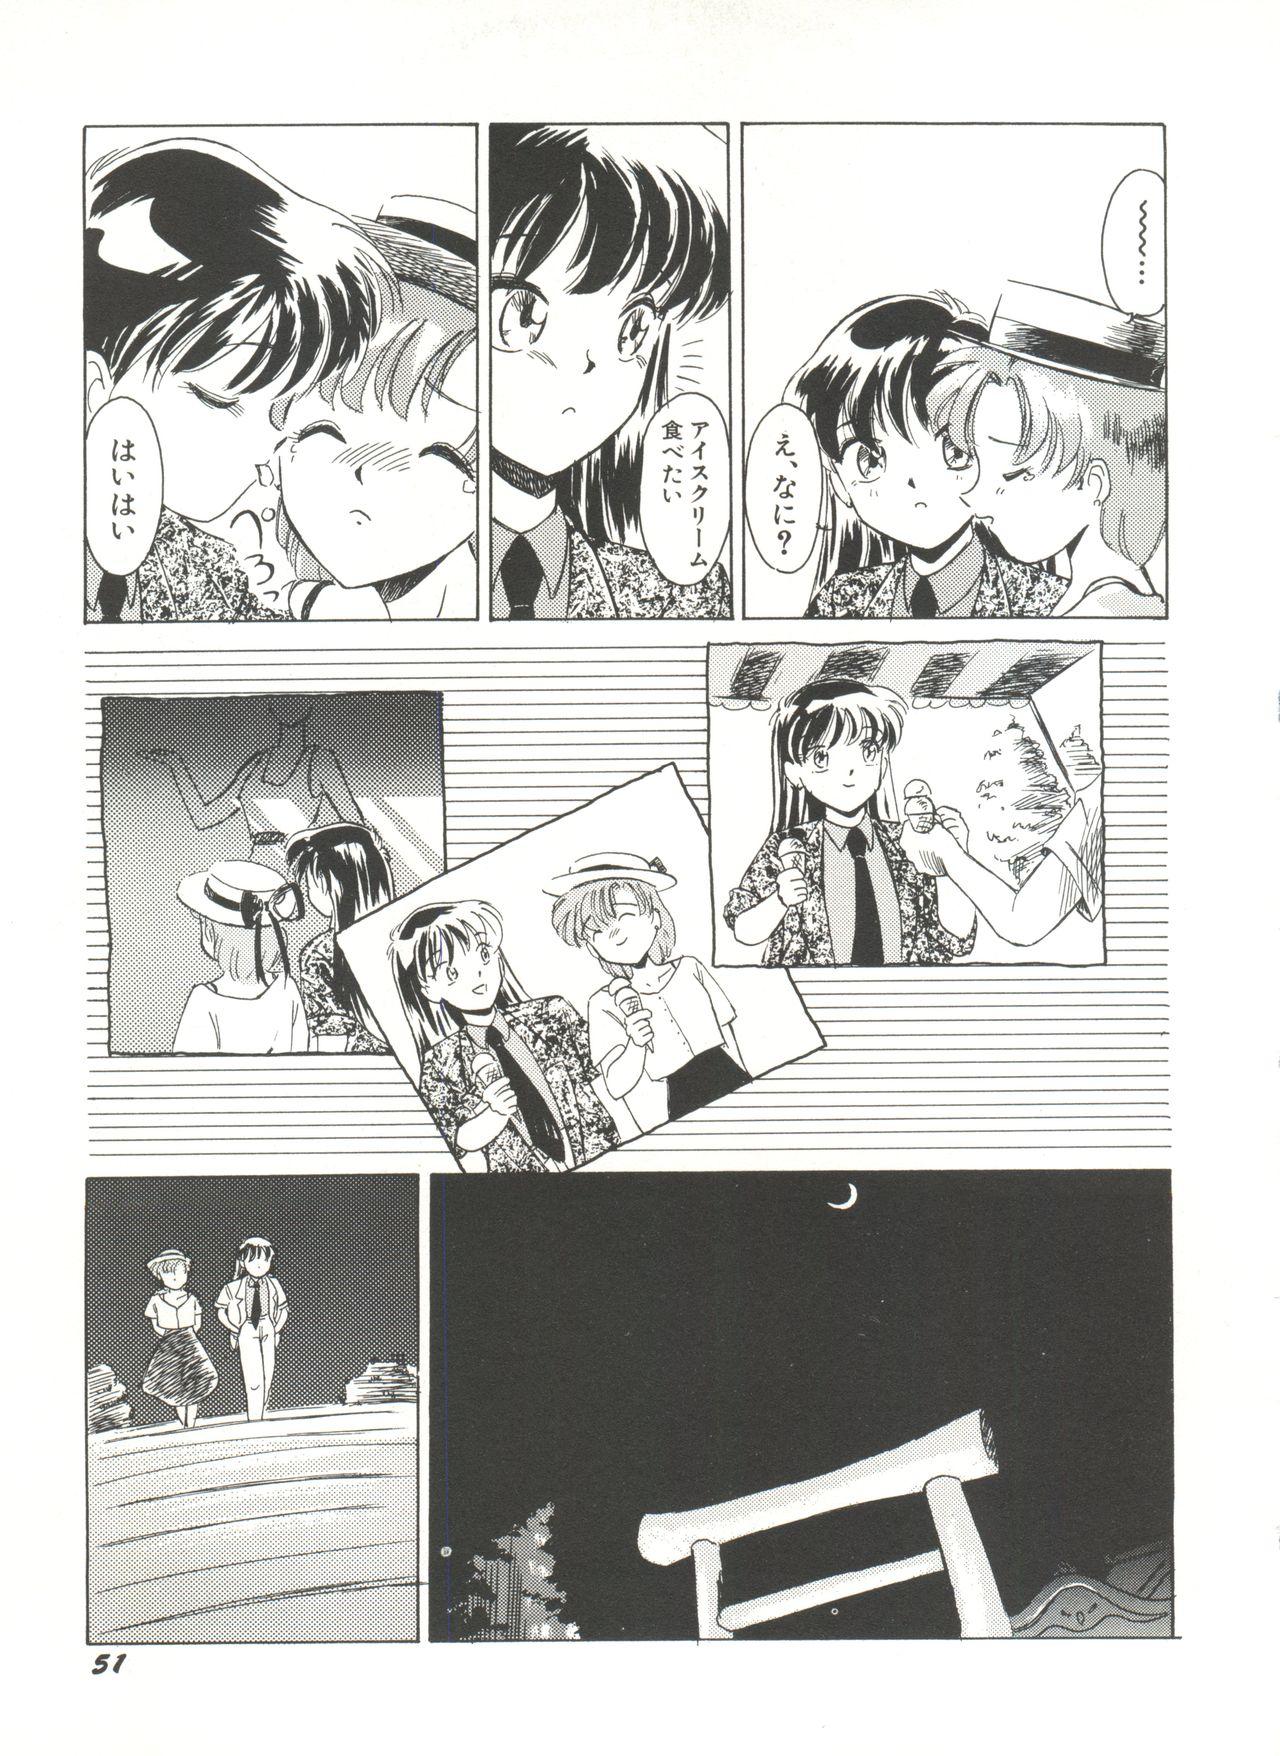 Bishoujo Doujinshi Anthology 16 - Moon Paradise 10 Tsuki no Rakuen 55